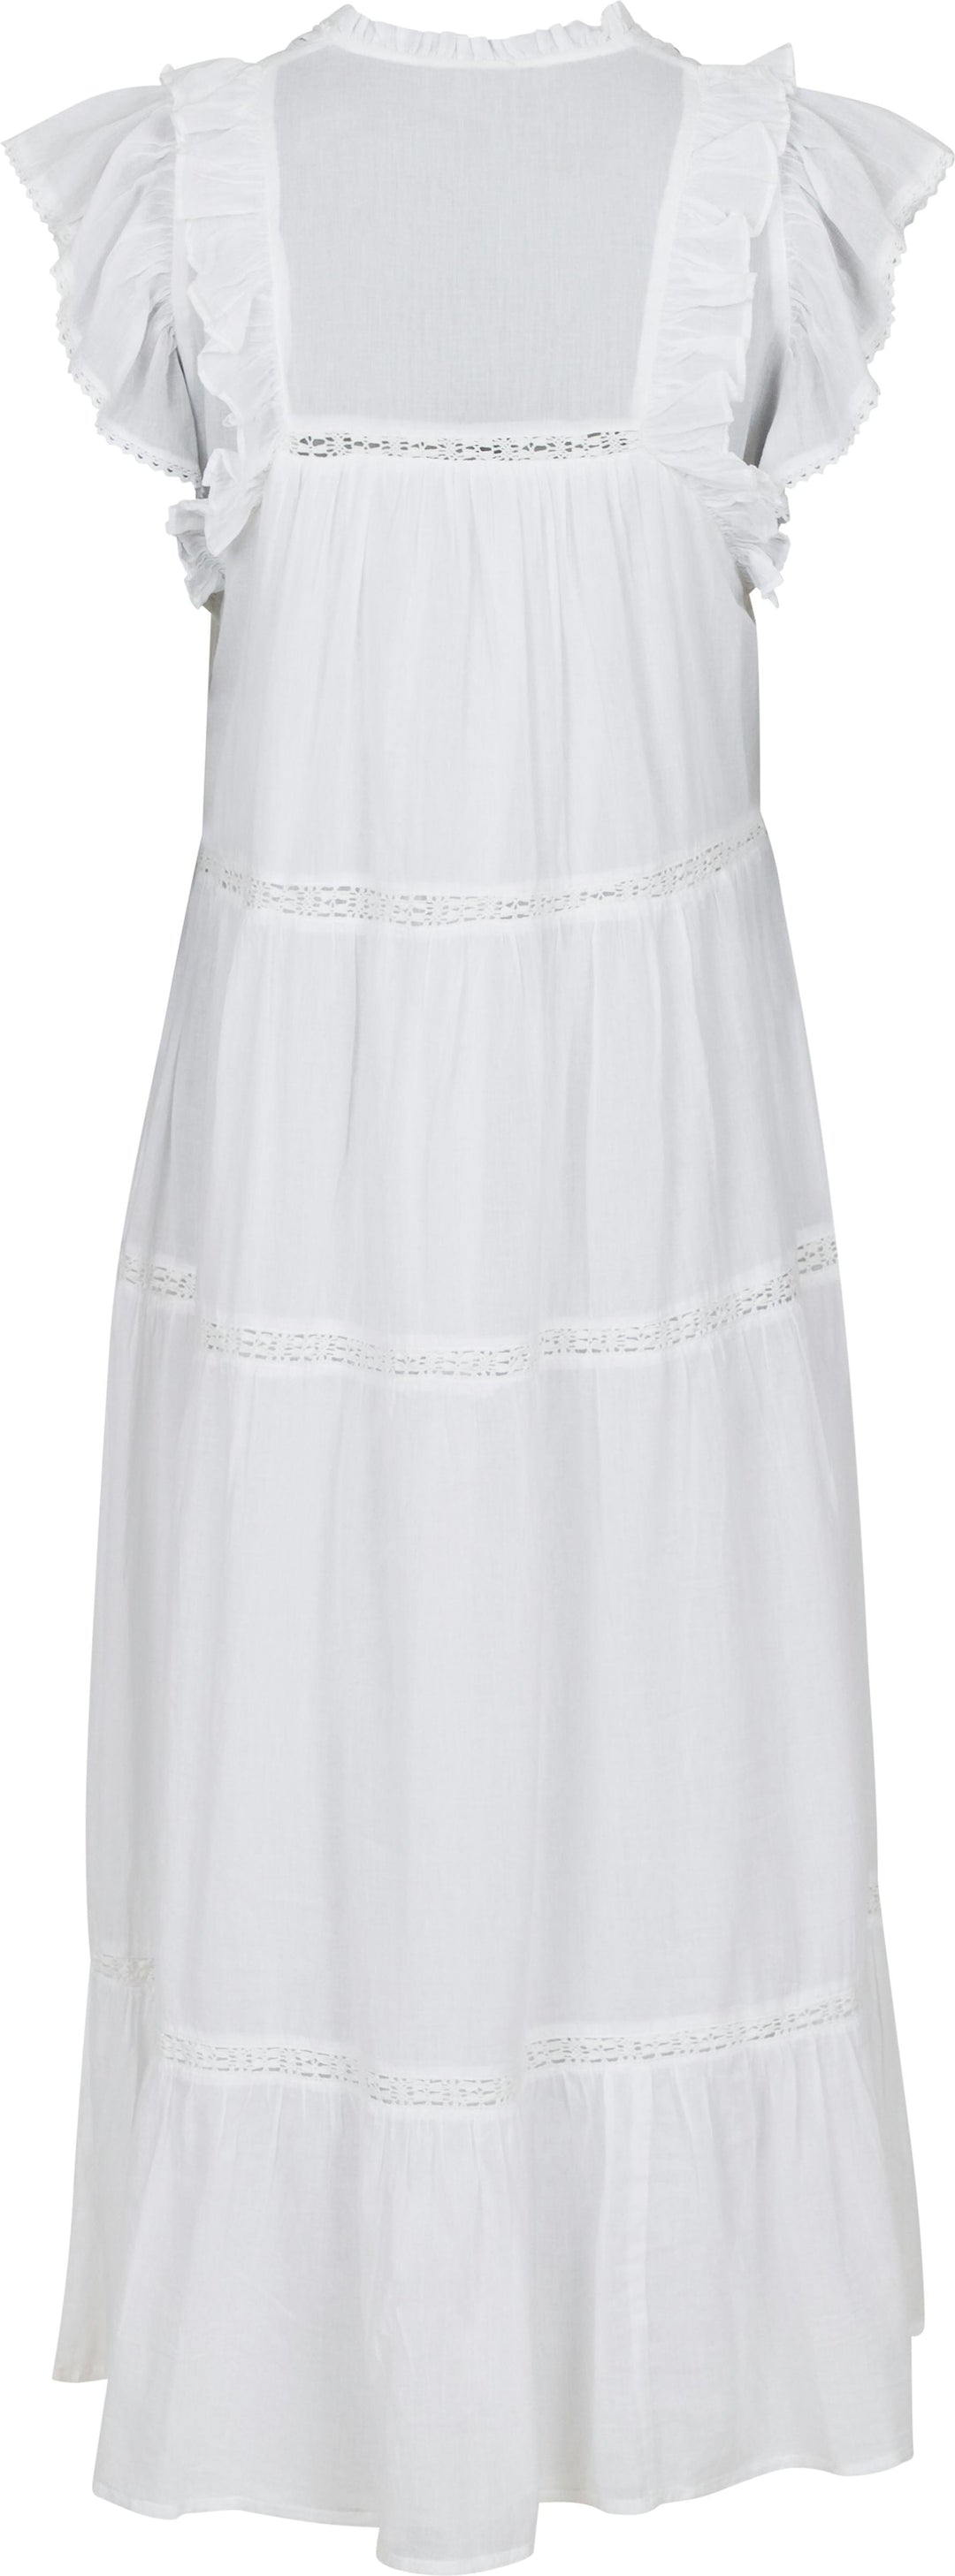 Neo Noir - Ankita S Voile Dress - White